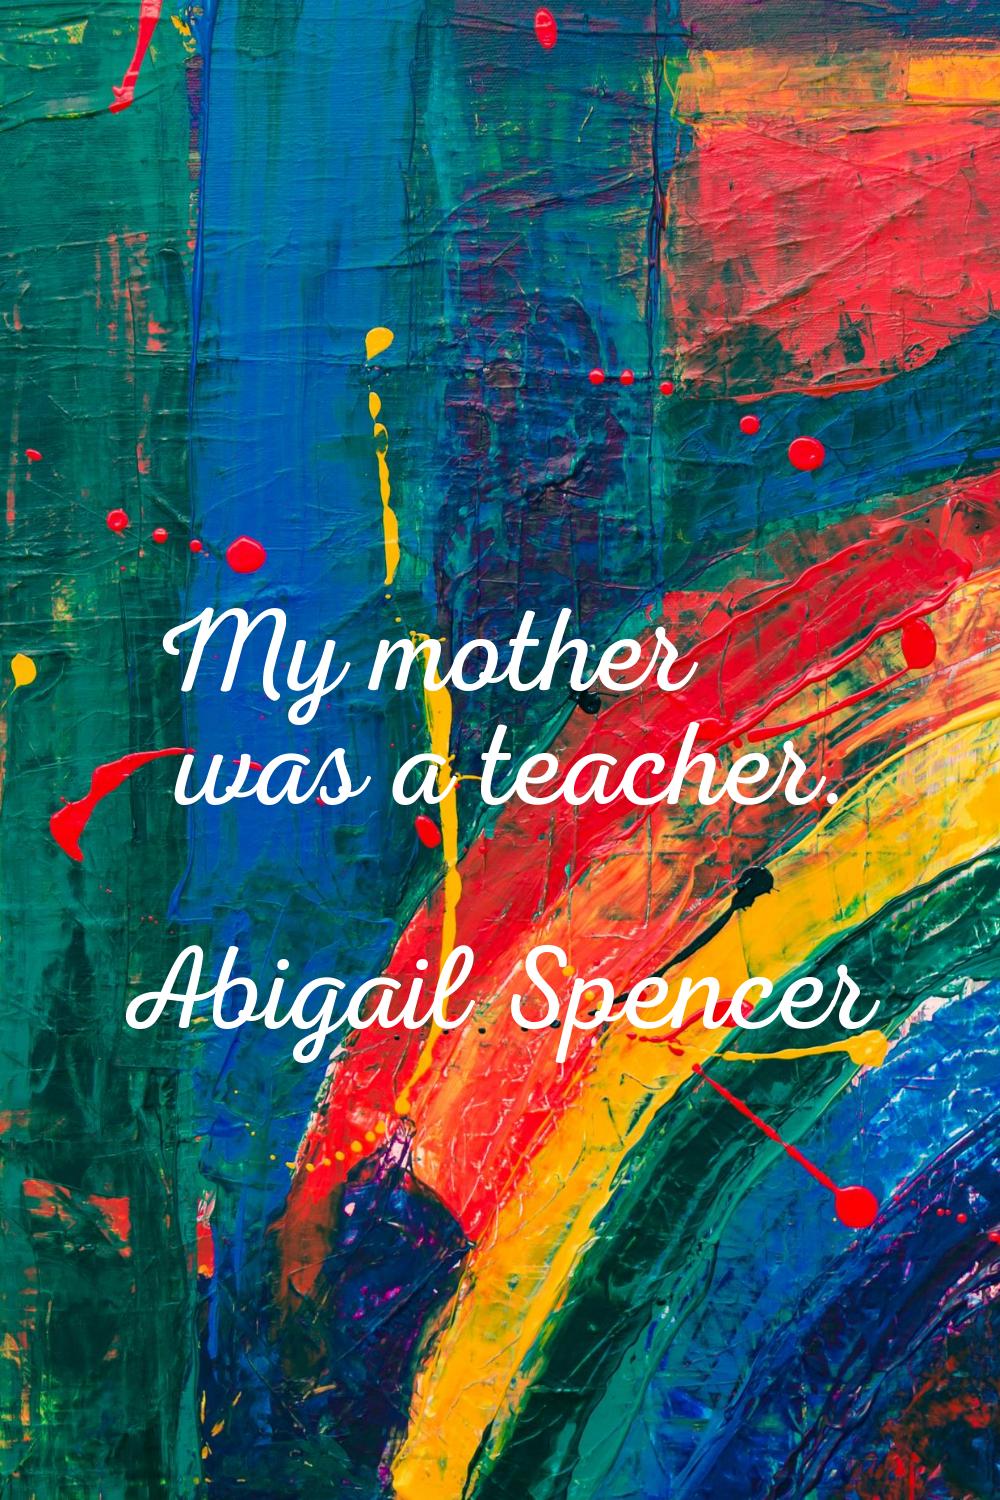 My mother was a teacher.